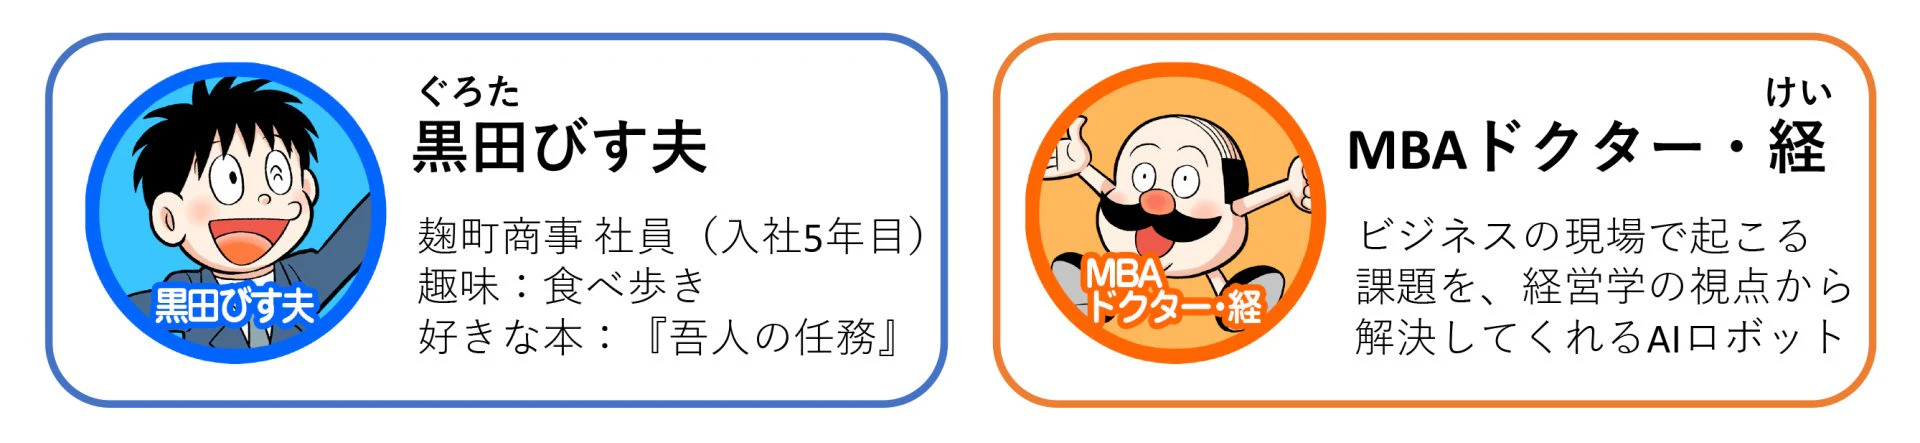 「マンガでわかるMBA100の基本」の登場人物 黒田びす夫 MBAドクター・経